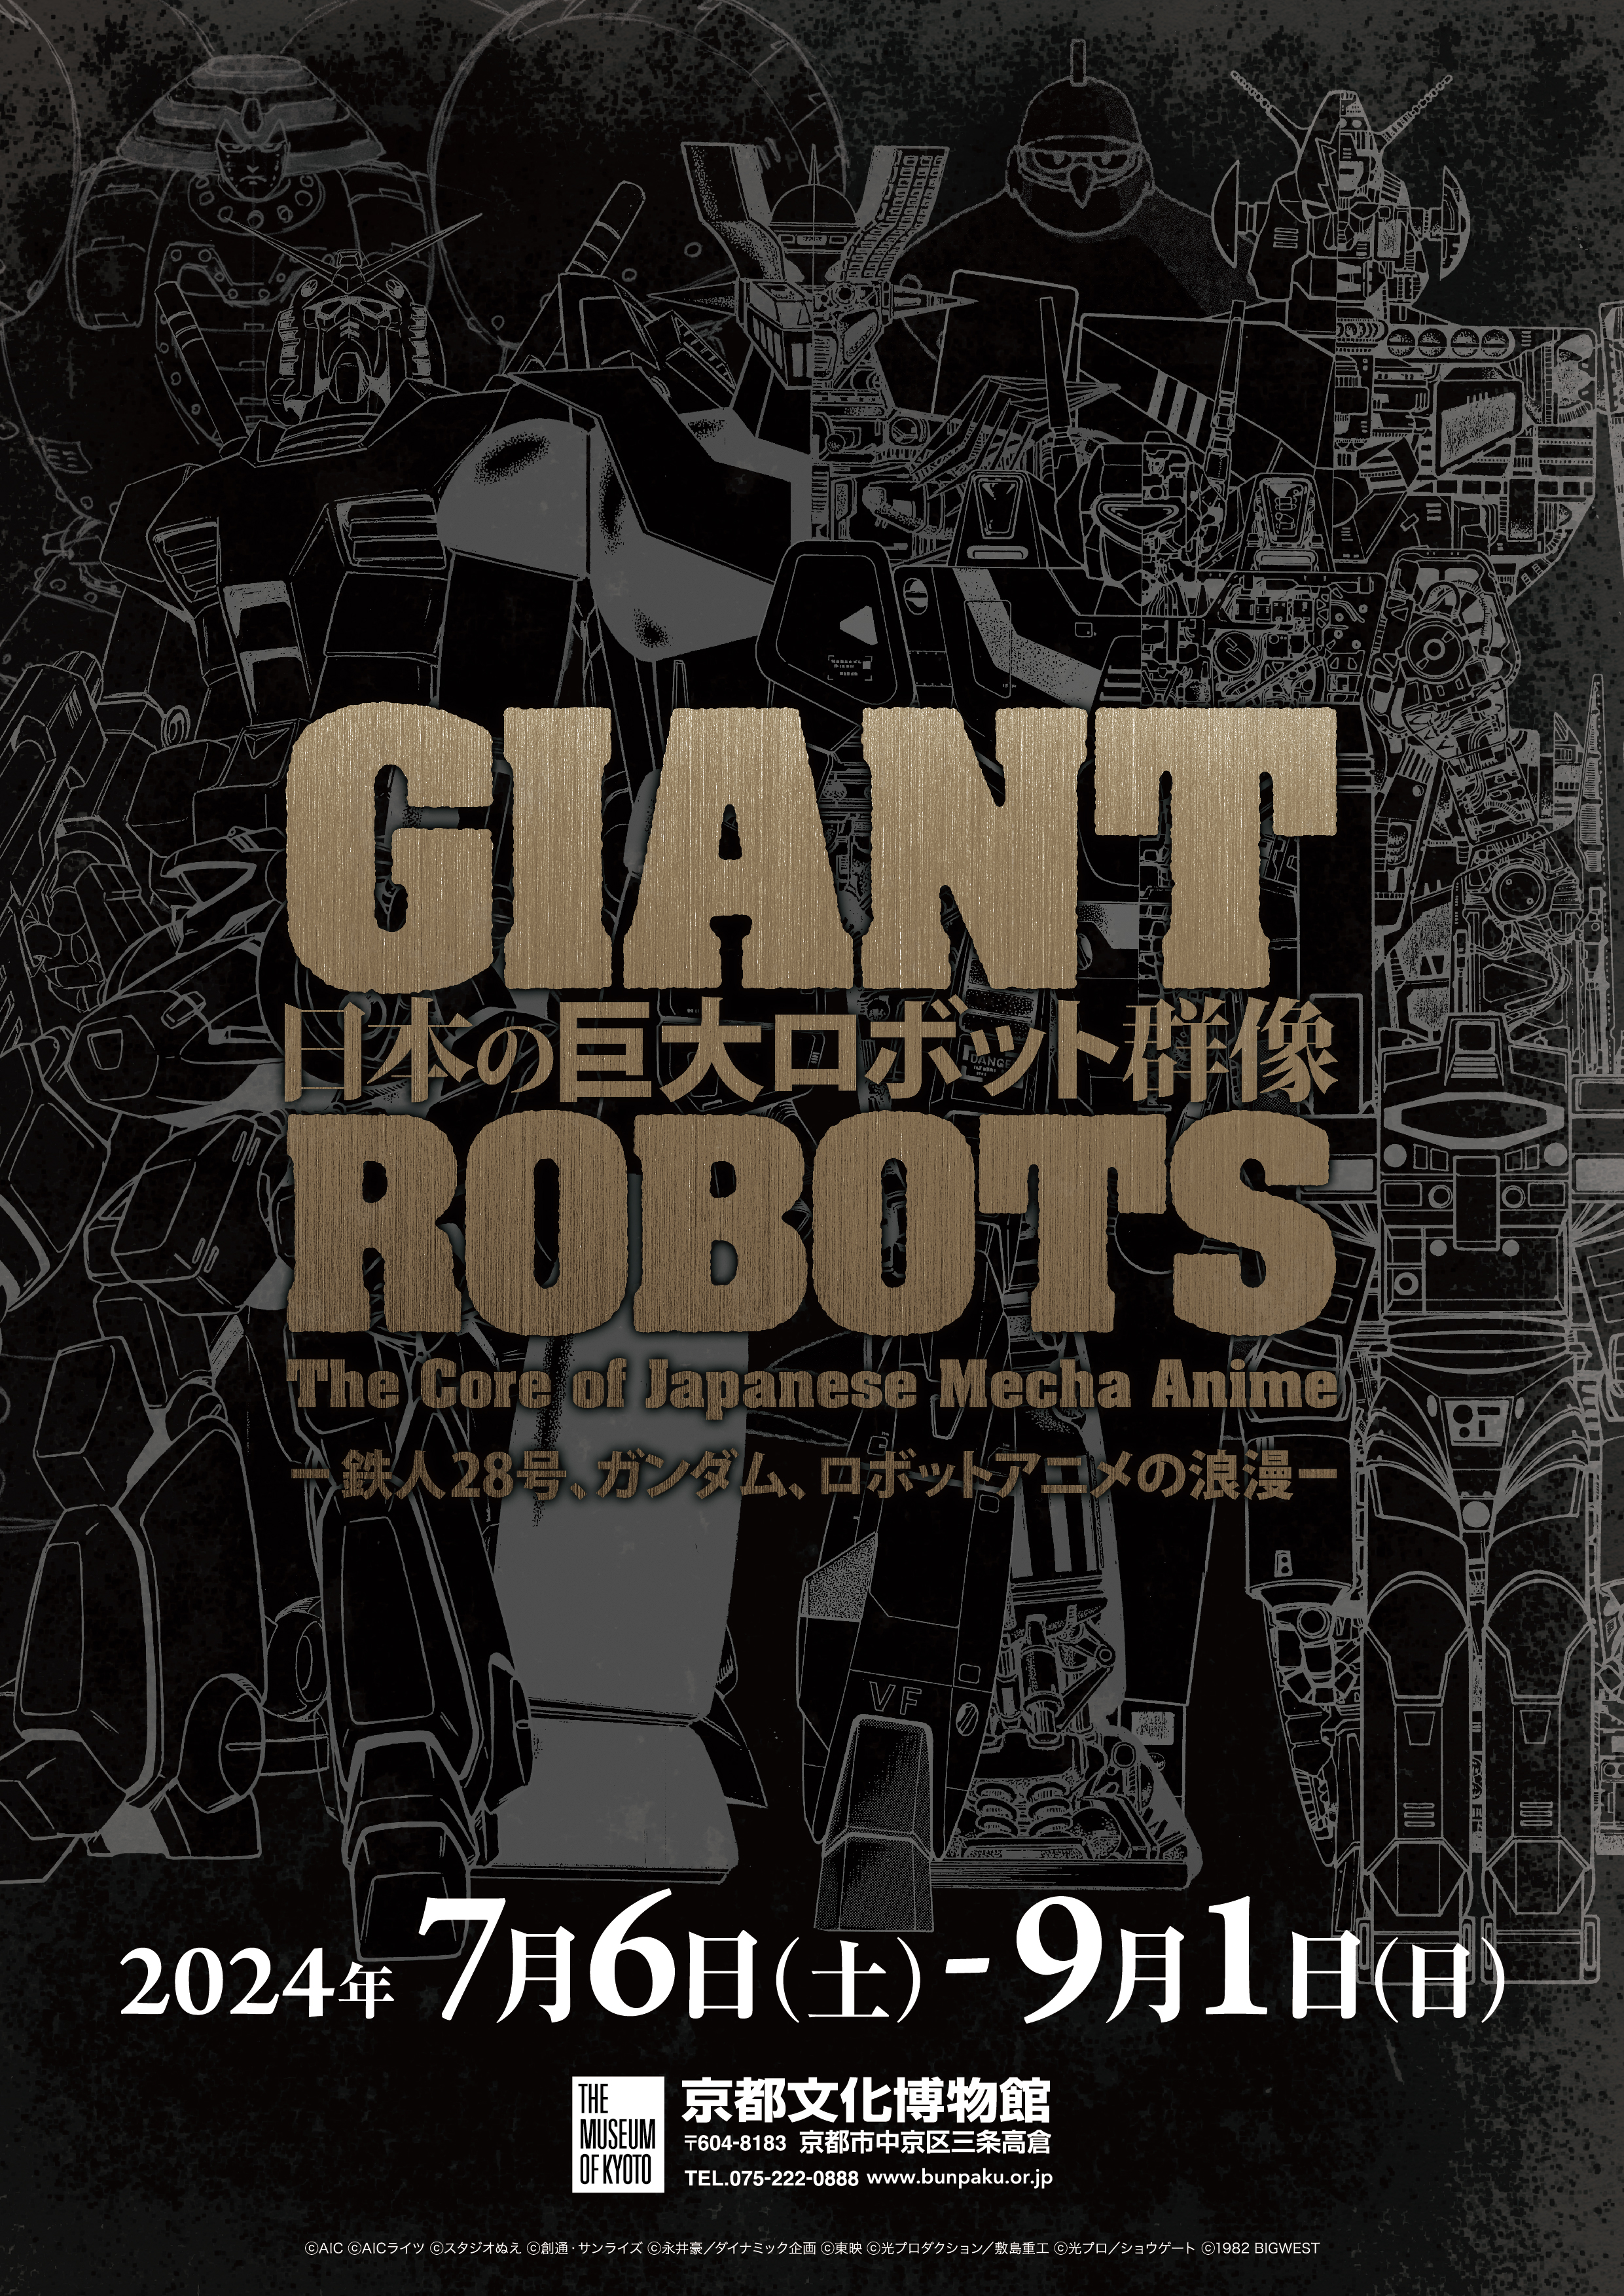 日本の巨大ロボット群像 −鉄人28号、ガンダム、ロボットアニメの浪漫−